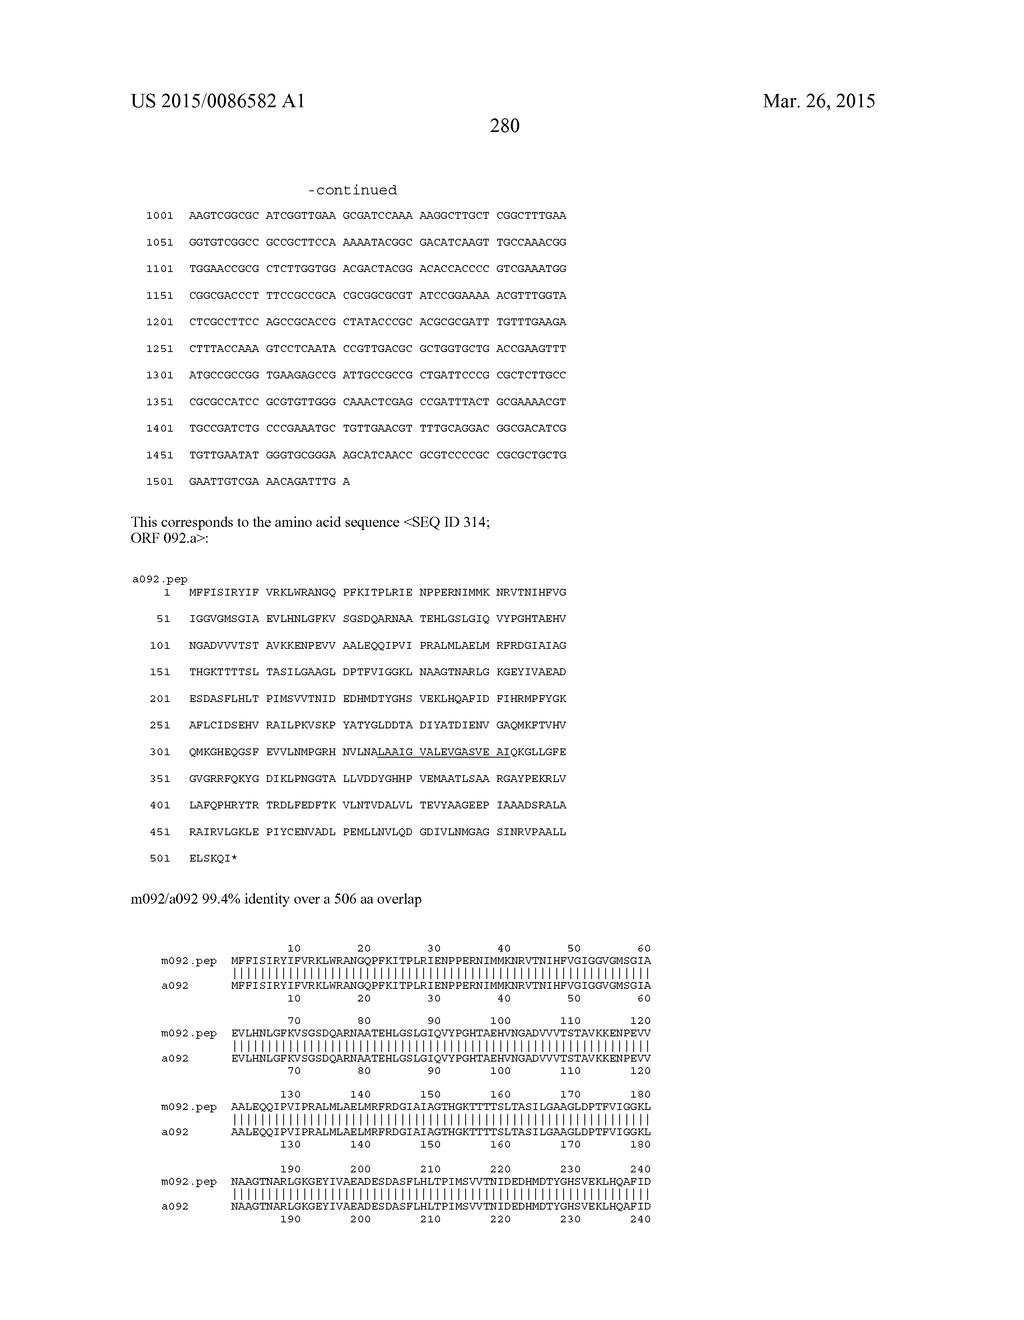 NEISSERIA MENINGITIDIS ANTIGENS AND COMPOSITIONS - diagram, schematic, and image 312